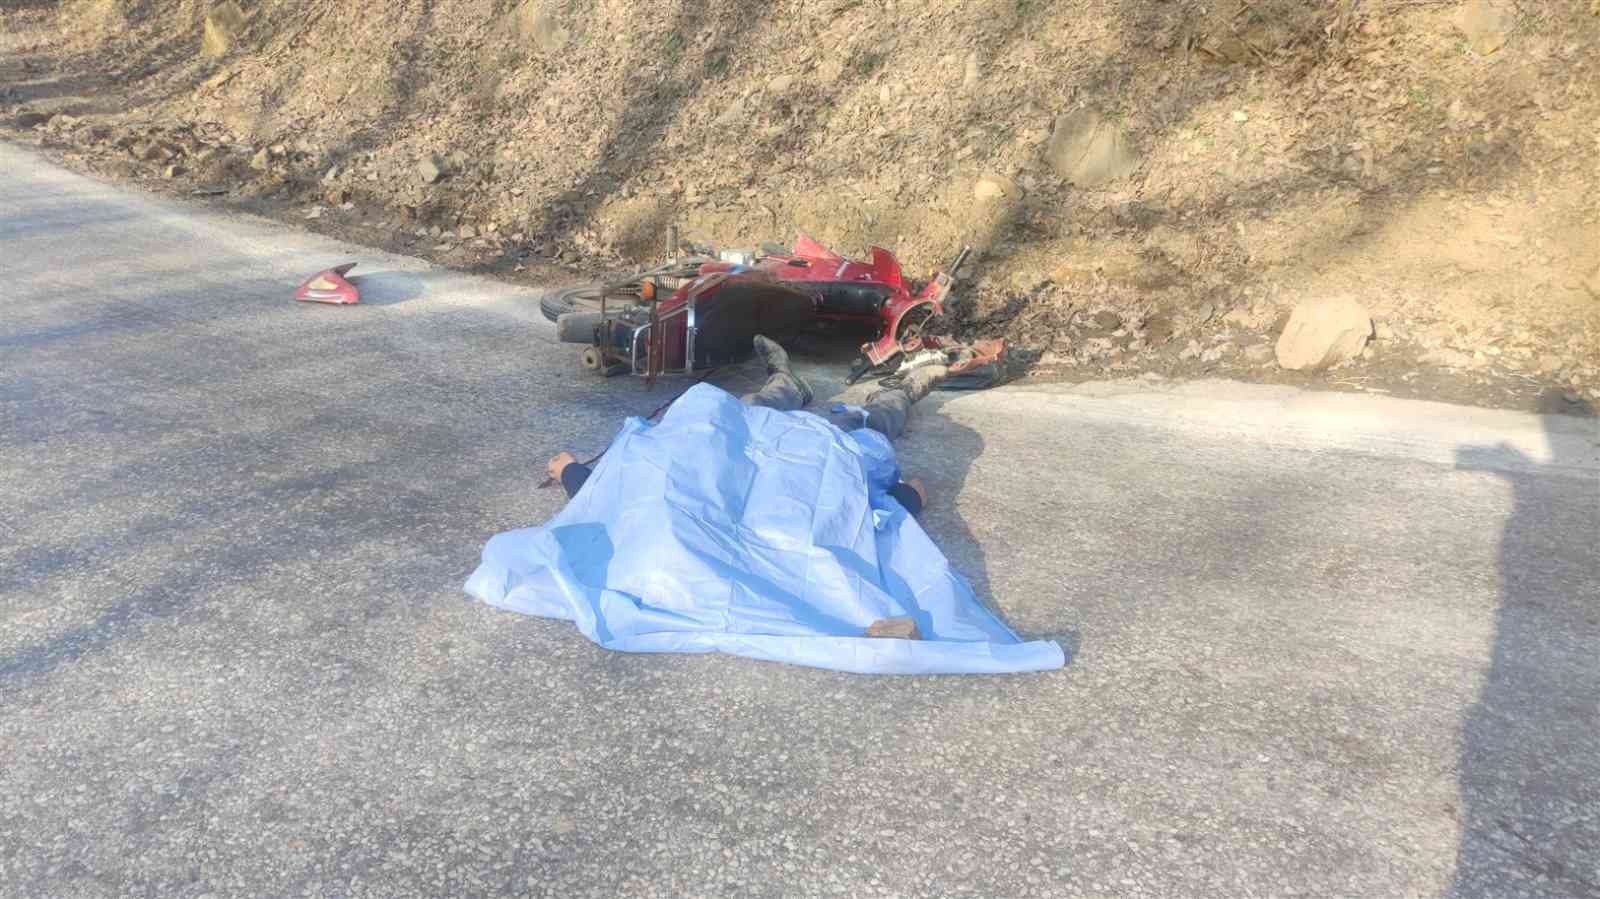 Bursa’nın Orhangazi ilçesinde bir motosiklet karşı yönden gelen kamyona yandan çarptı. Kazada motosiklet sürücüsü olay yerinde feci şekilde can ...